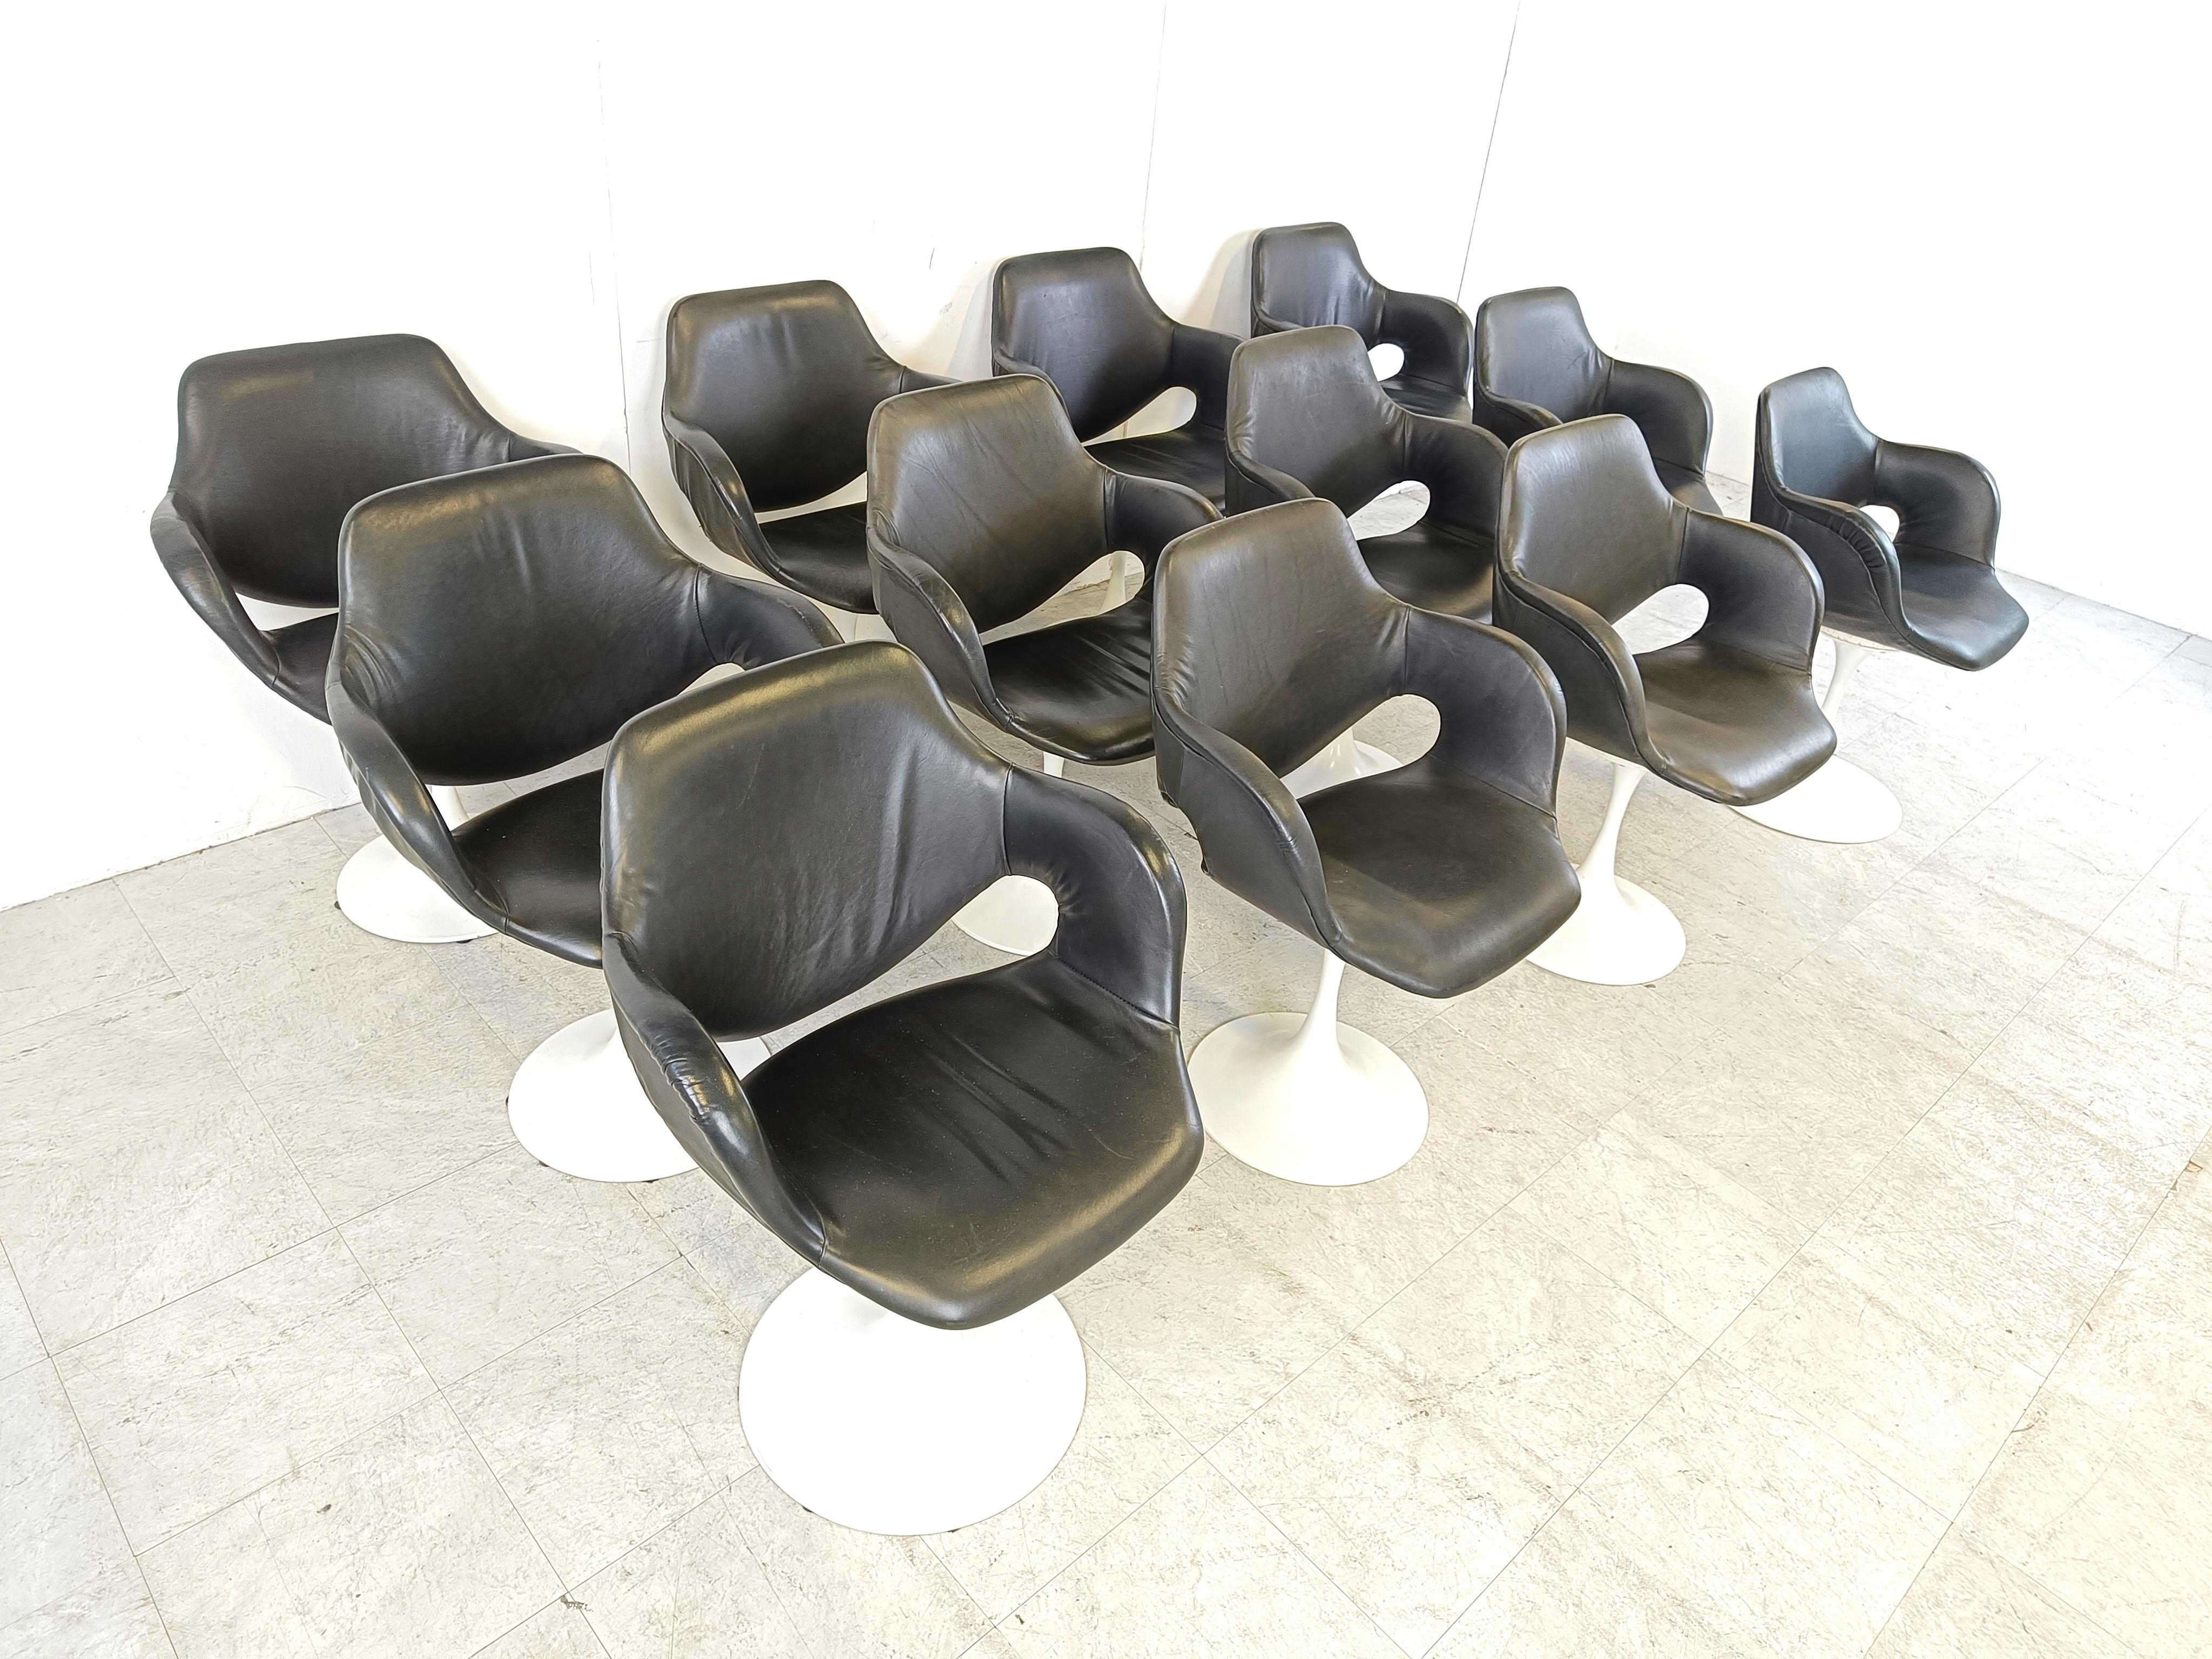 Seltener Satz von 12 Esszimmerstühlen mit Tulpenfuß von Boris Tabacoff.

Diese eleganten Stühle sind mit schwarzem Skaipolster bezogen und haben ein weiß lackiertes tulpenförmiges Metallgestell.

Die weiß lackierten Metallfüße weisen leichte